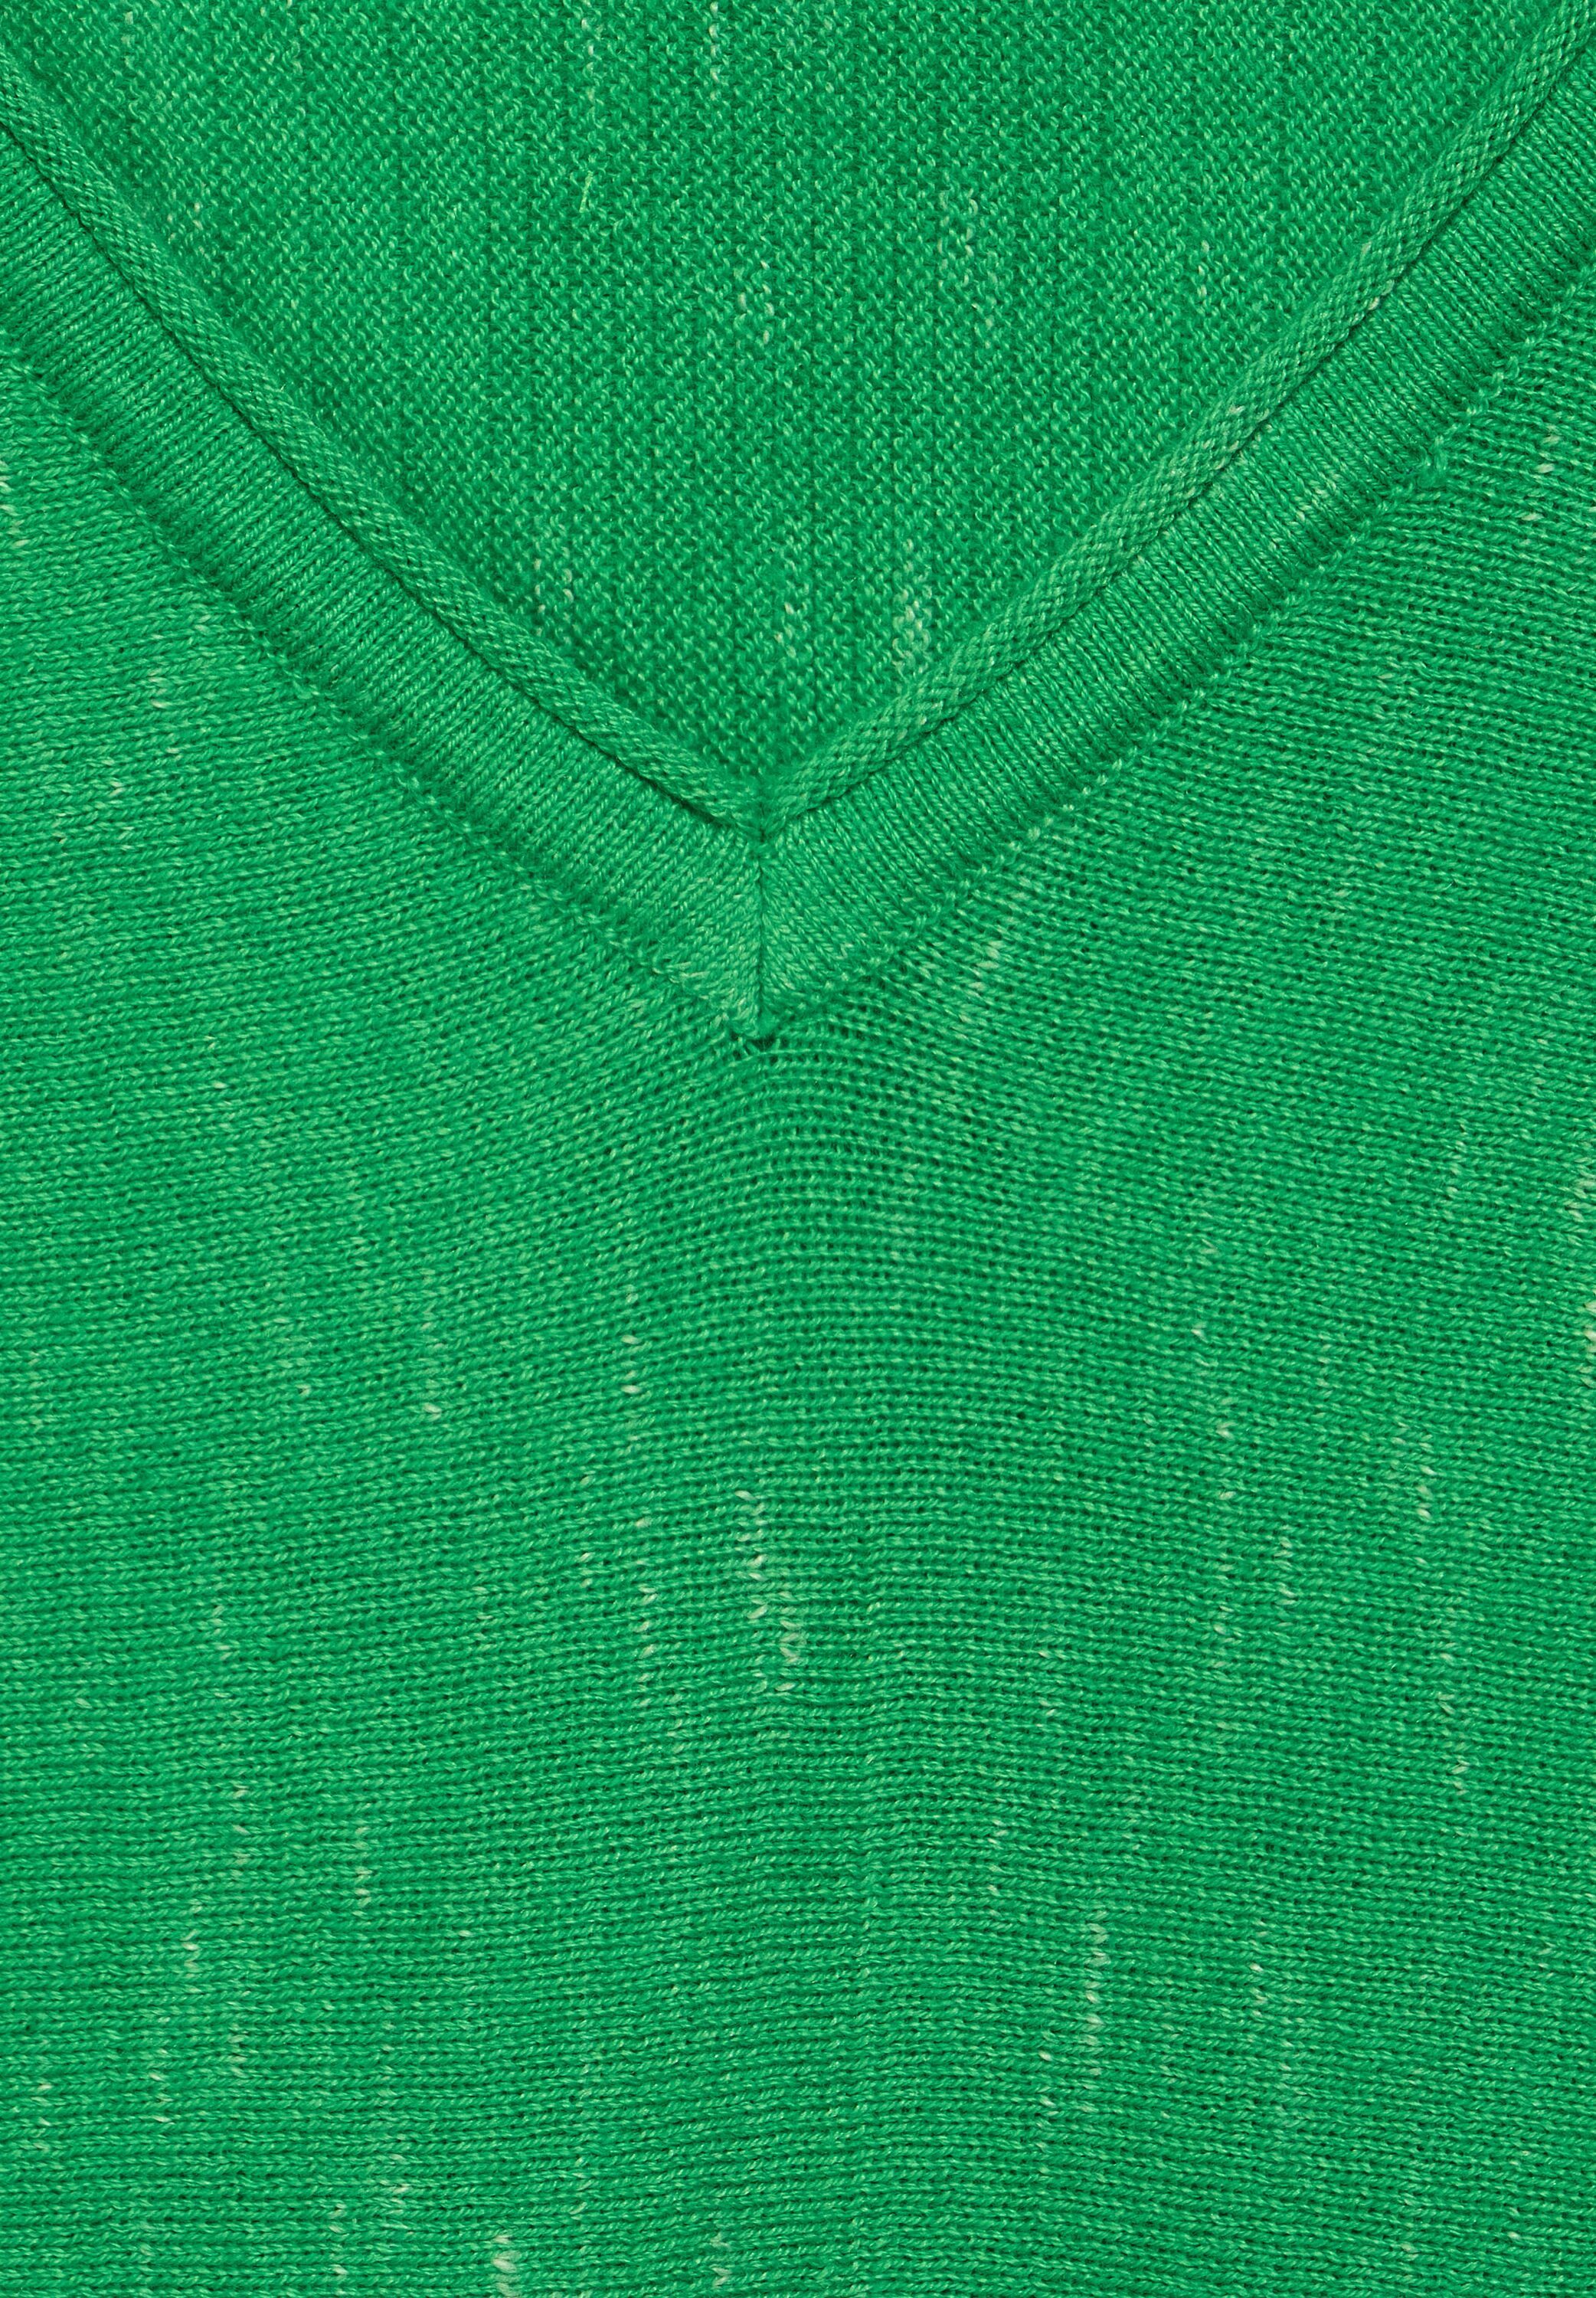 Cecil V-Ausschnitt-Pullover in green radiant Unifarbe